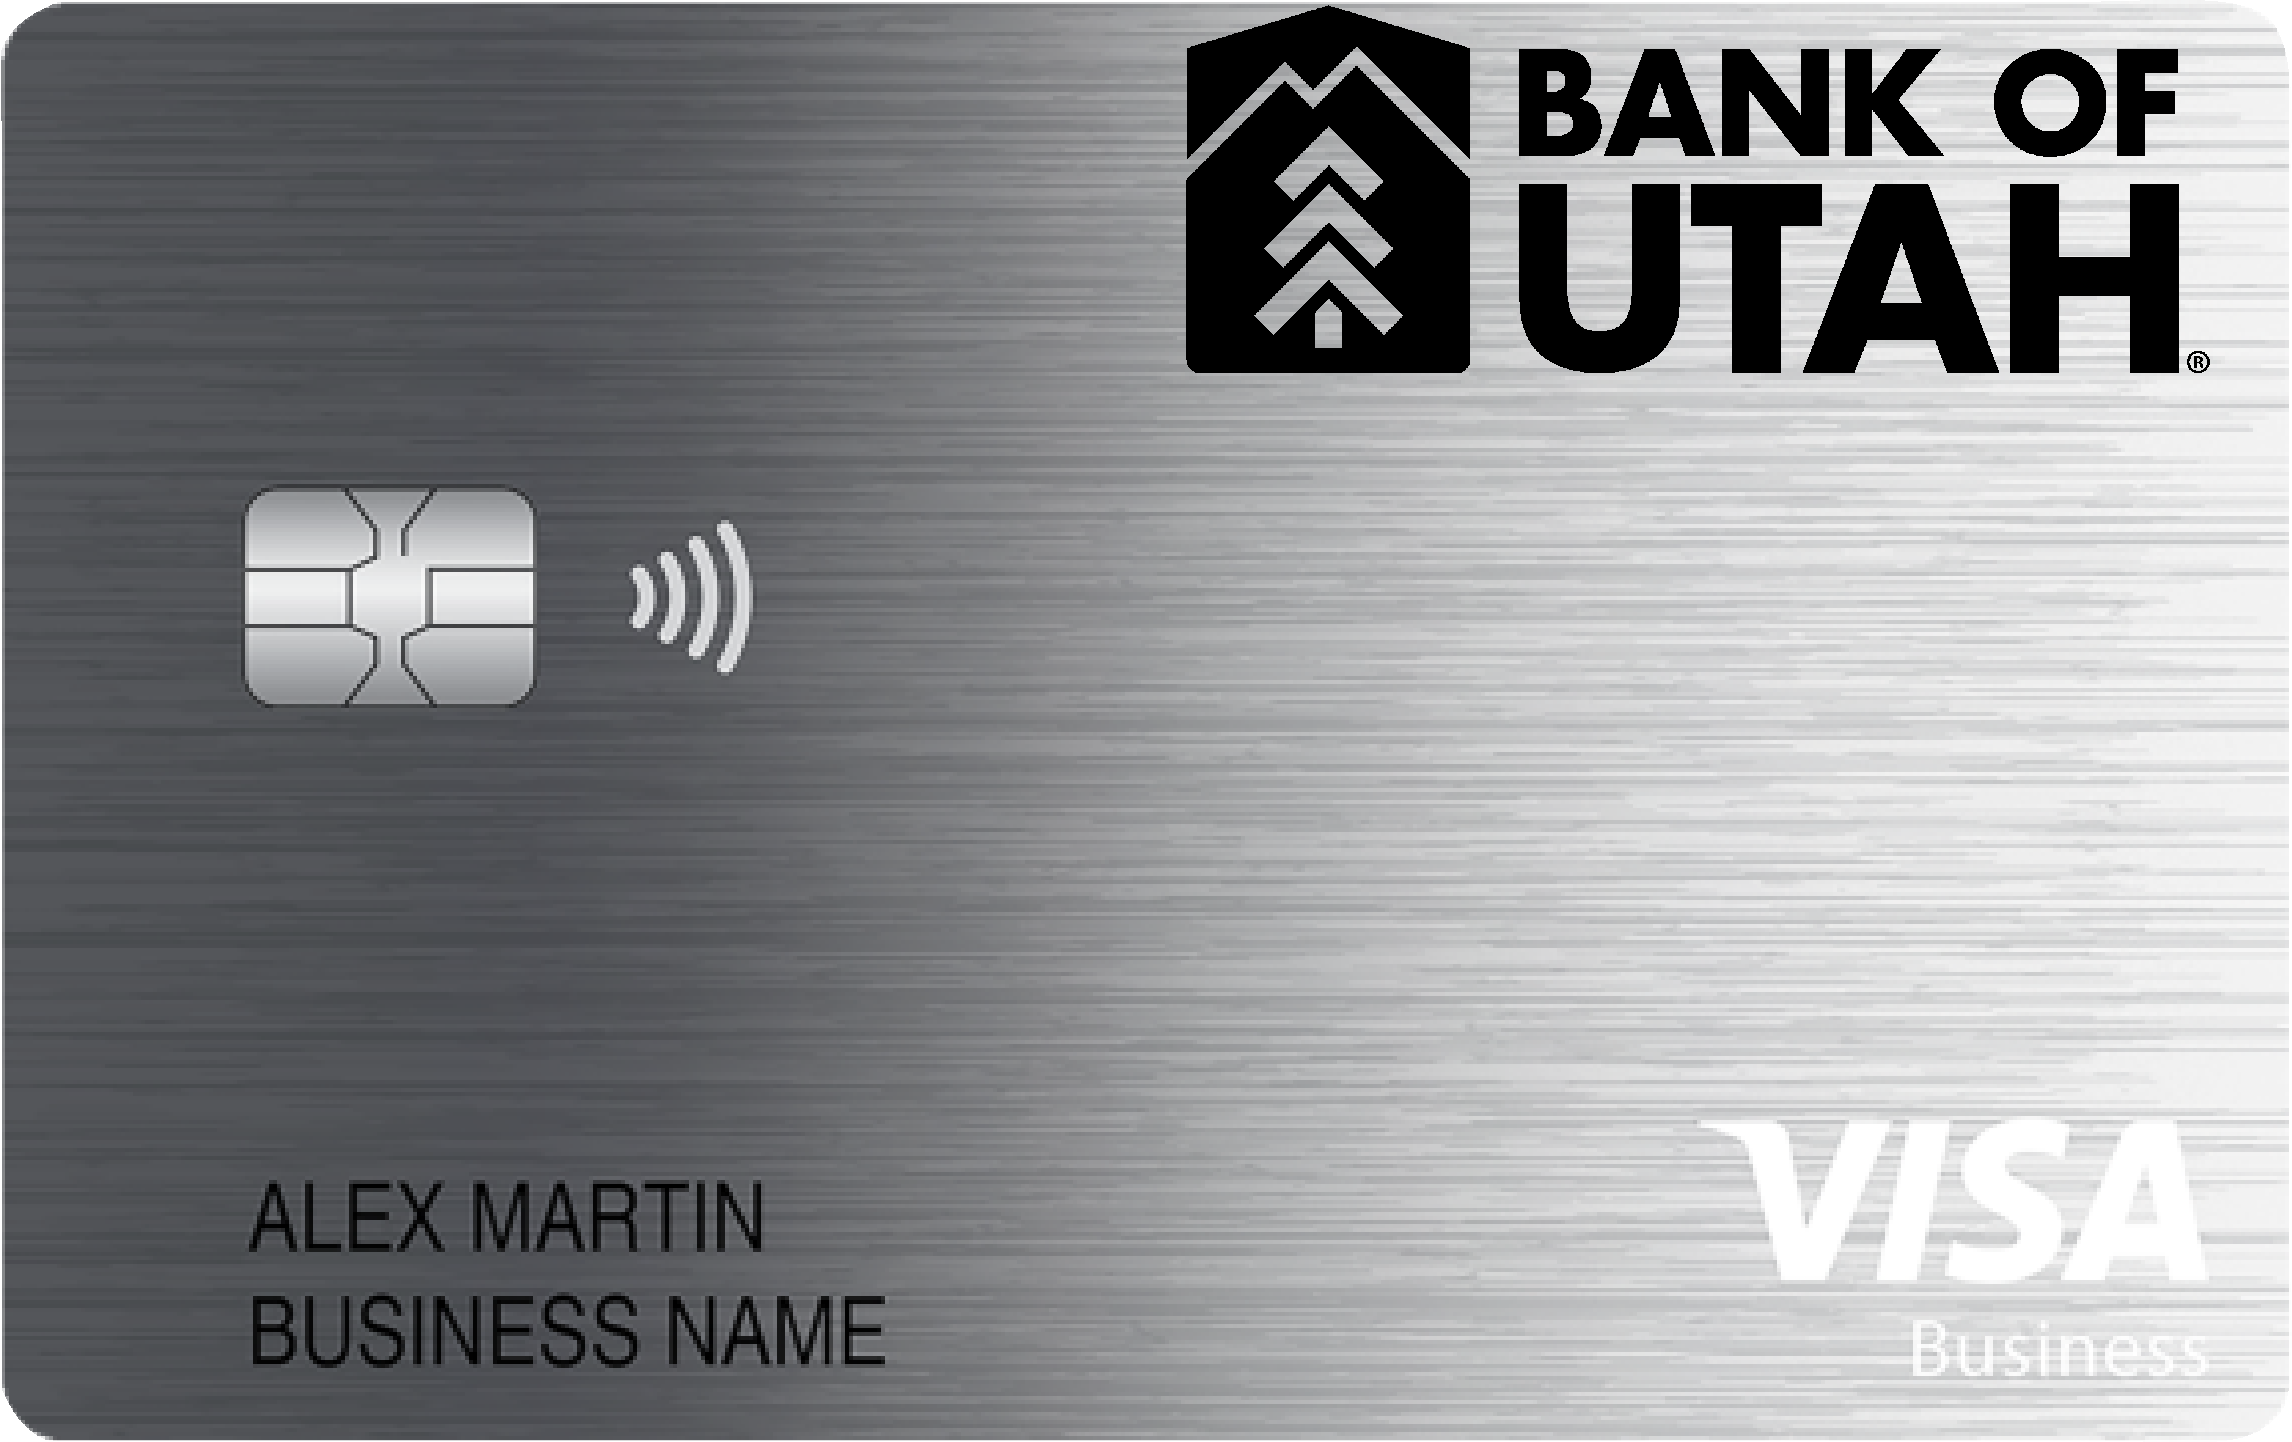 Bank of Utah Business Cash Preferred Card